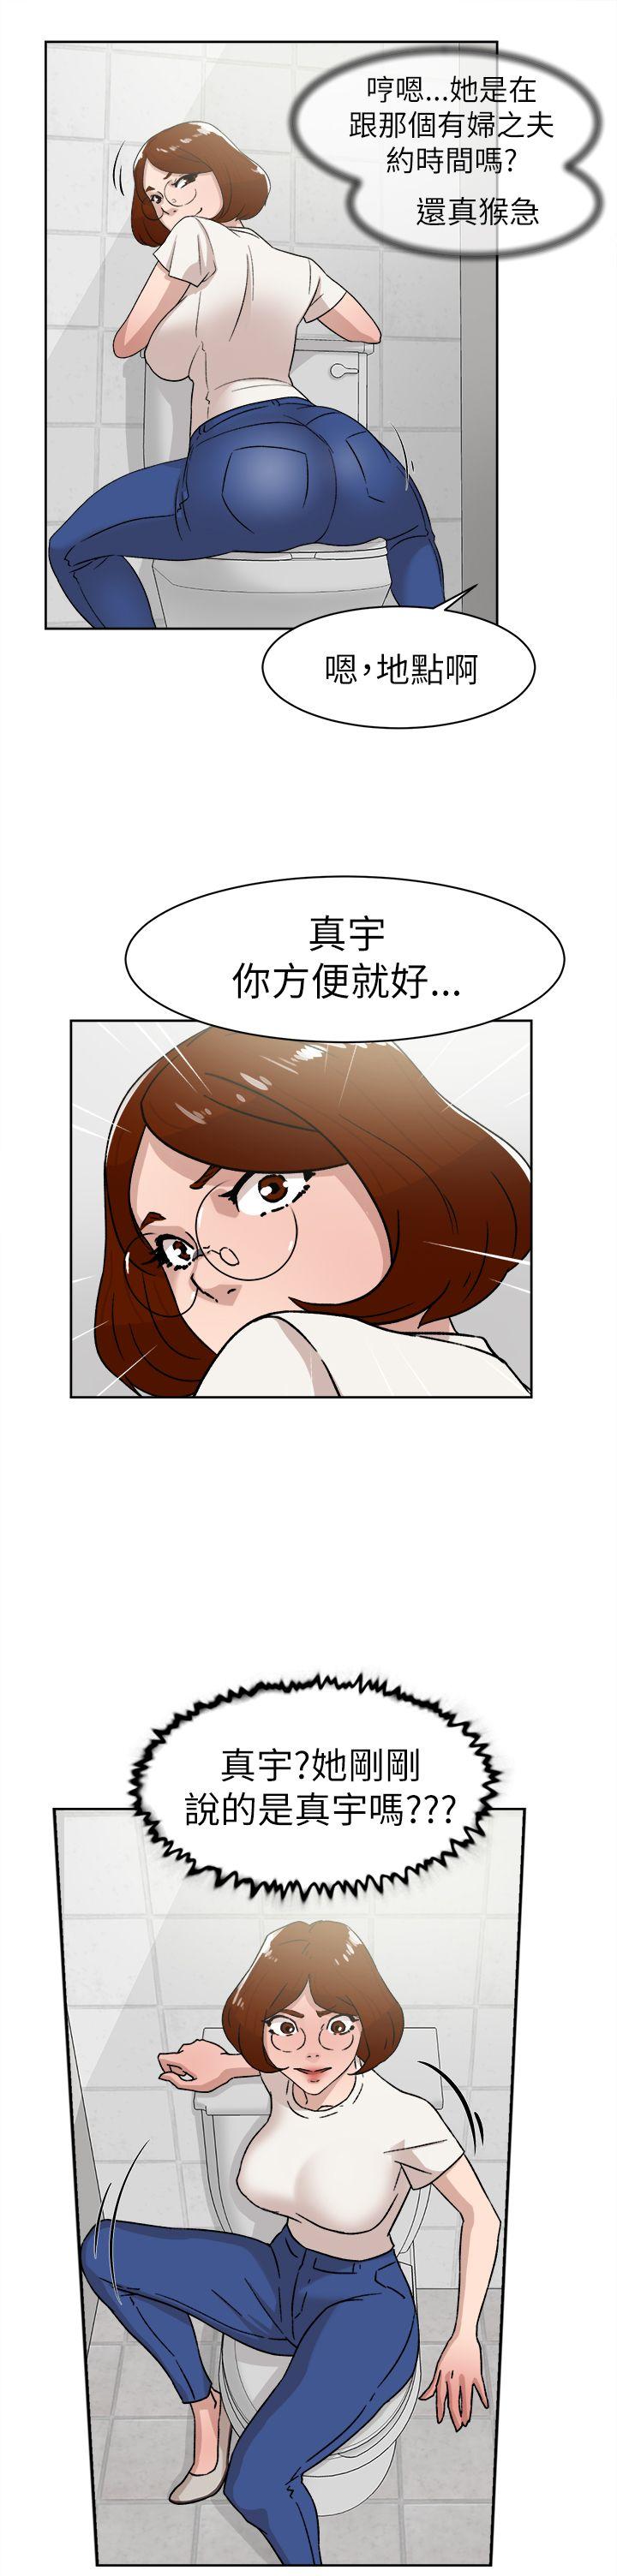 韩国污漫画 她的高跟鞋(無刪減) 第41话 17